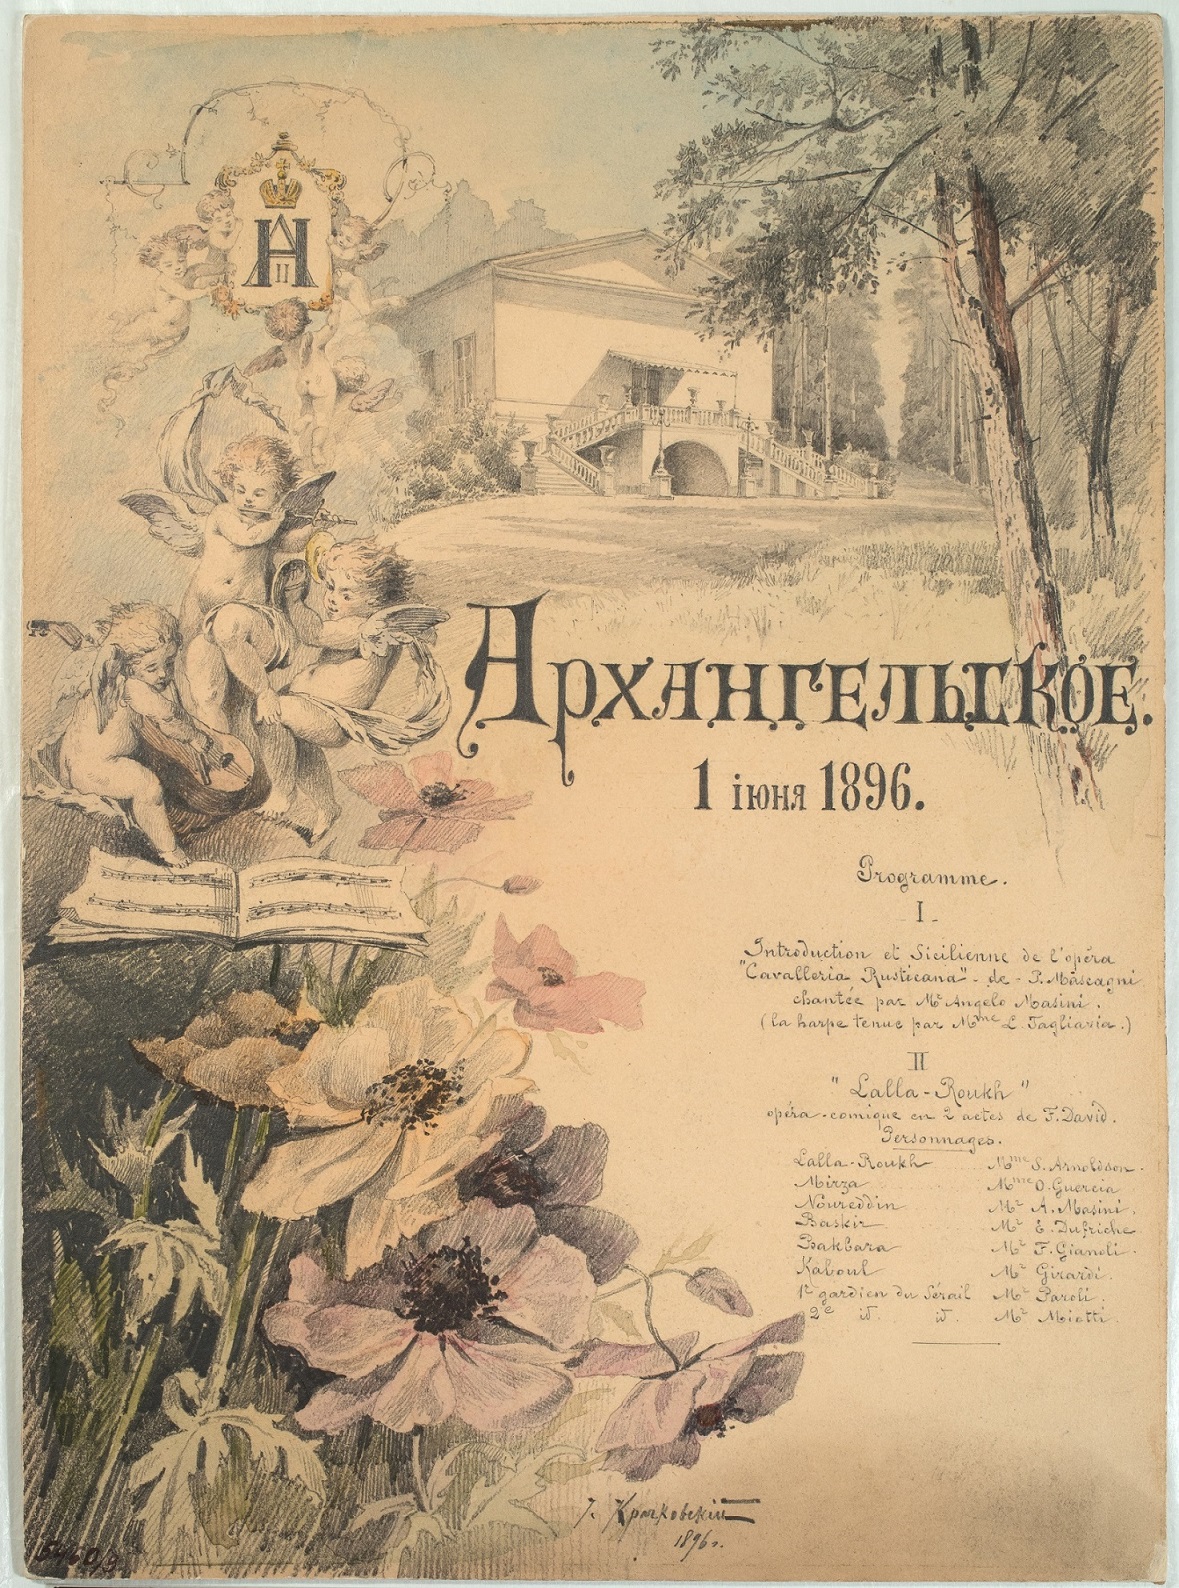 И.Е. Крачковский. Программа представления в театре Архангельского 1 июня 1896 г.